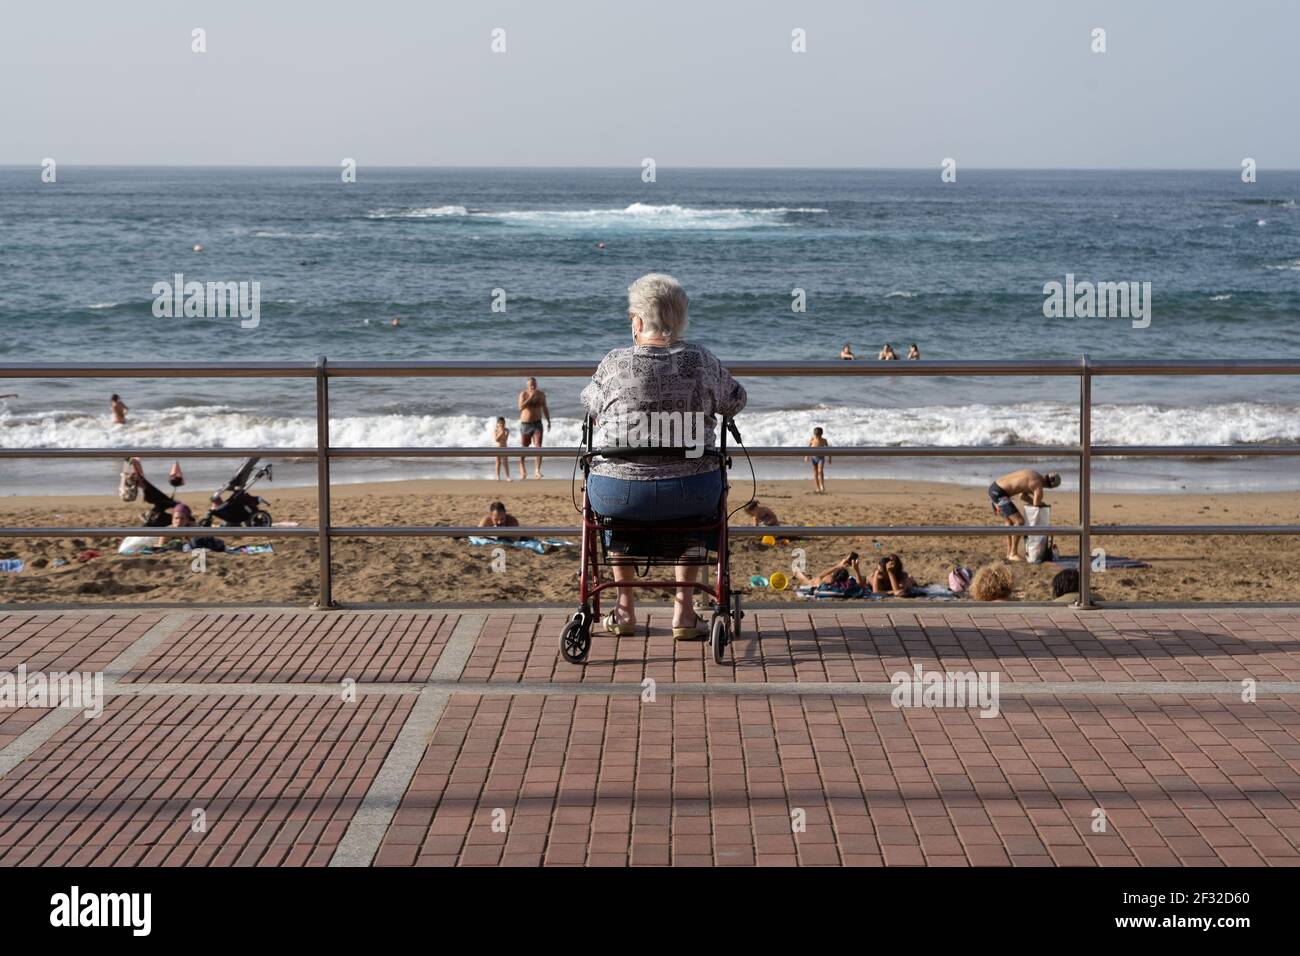 Plage de Las Canteras à Las Palmas de Gran Canaria, Espagne - 19 février 2021 : une femme âgée assise dans son cadre de marche et regardant les gens se baigner sur la Banque D'Images